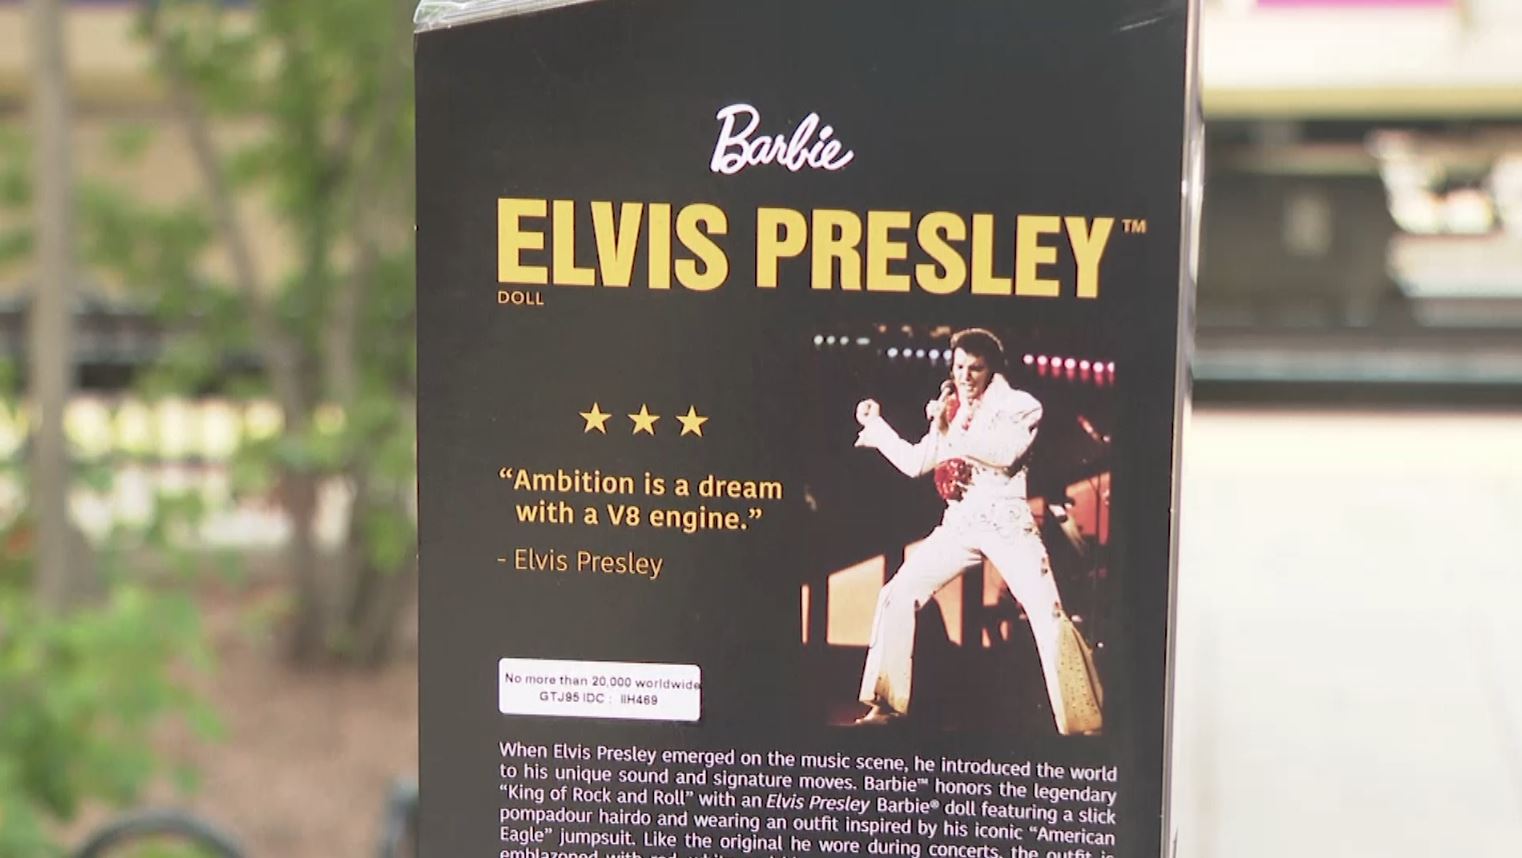 เปิดตัว! บาร์บี้เวอร์ชั่น Elvis Presley ราชาร็อคแอนด์โรล